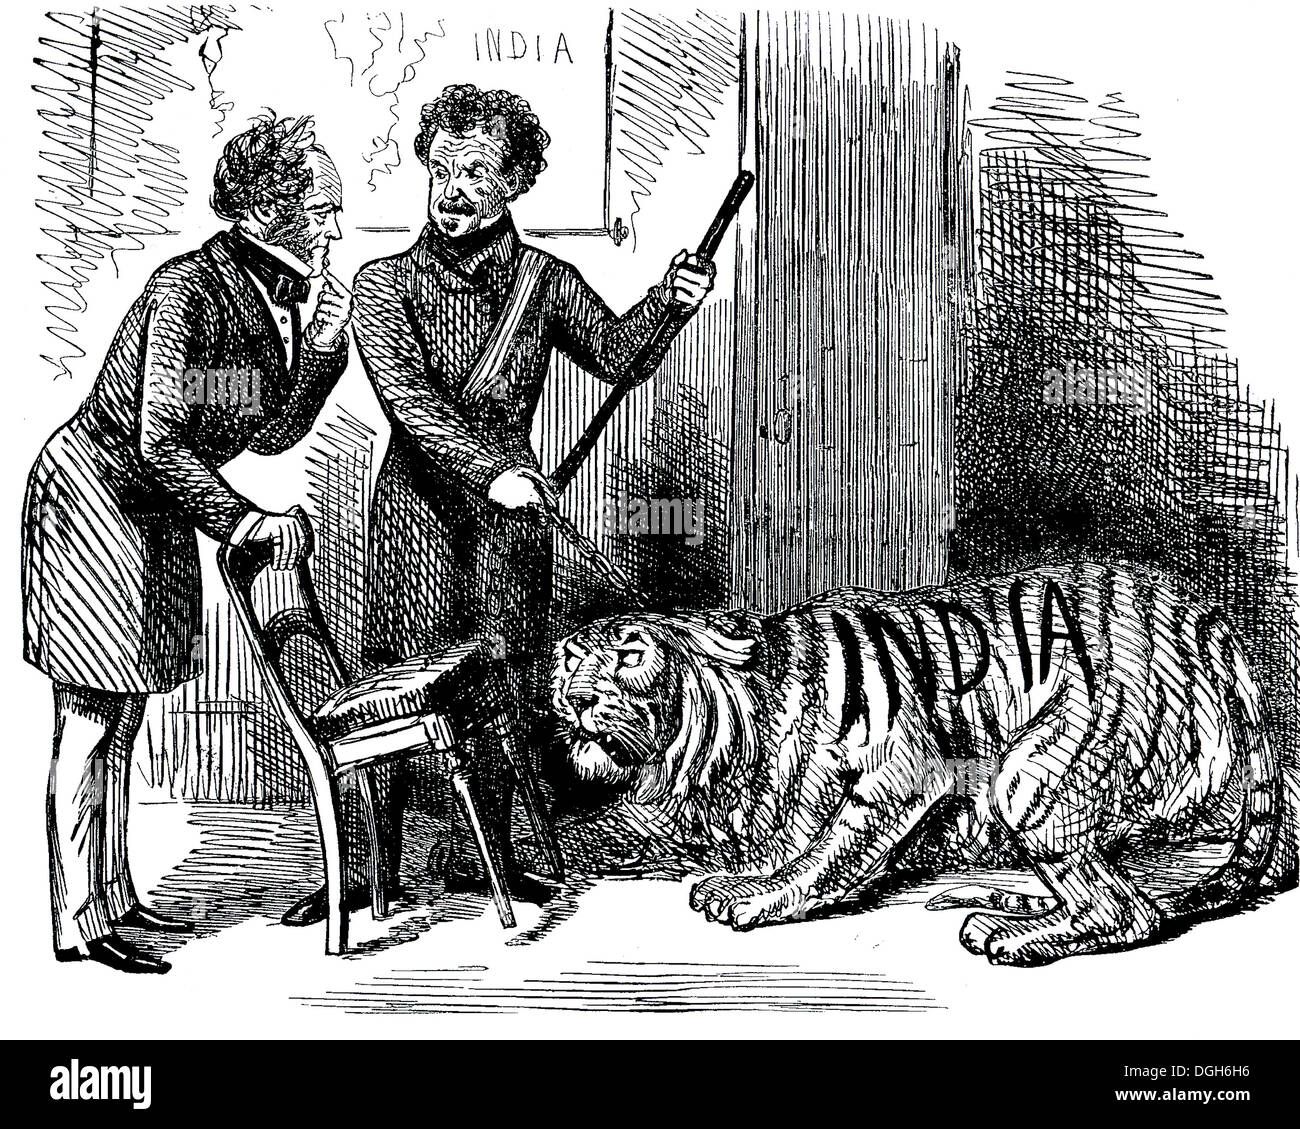 Das neue Jahr Geschenk Punch cartoon veröffentlicht 2. Januar 1858 zeigt Sir Colin Campbell und Palmerston-siehe Beschreibung unten Stockfoto